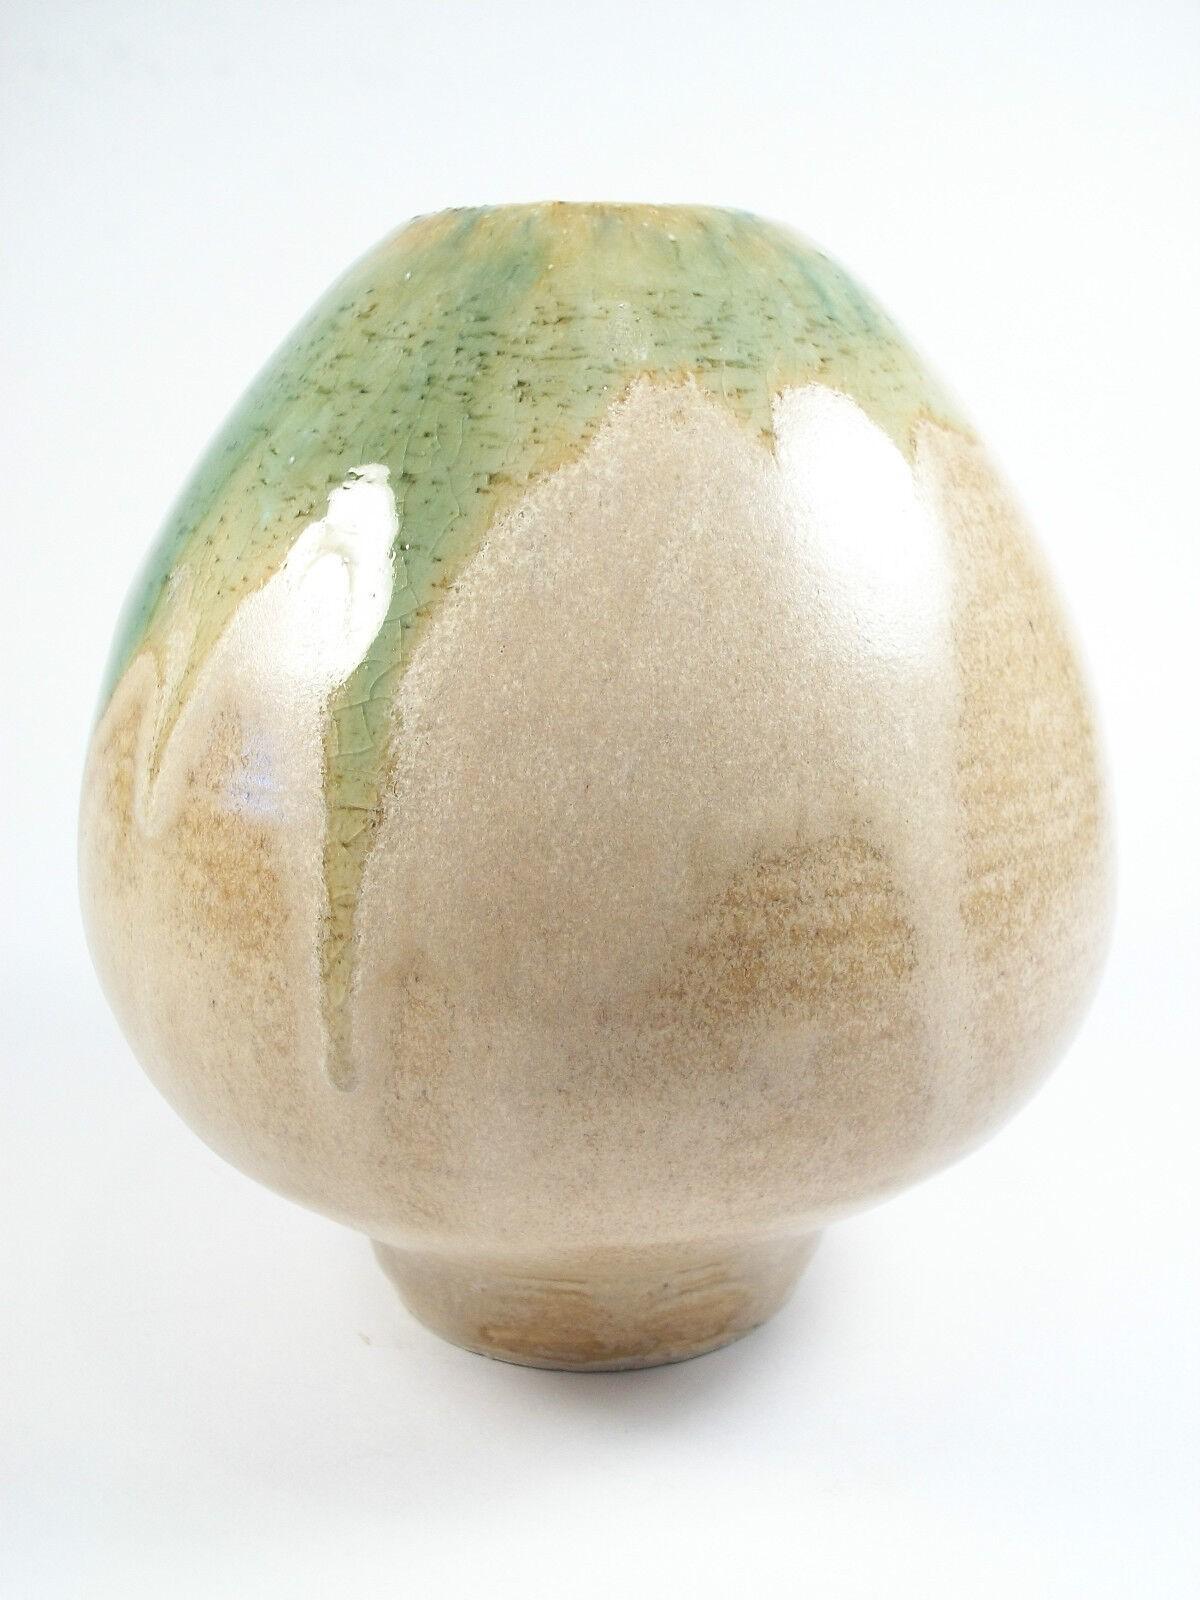 Vintage - studio pottery - Mid Century Modern - vase en grès porcelaineux tourné au tour - se terminant par un pied étroit - avec une glaçure de couleur taupe ainsi qu'un détail de goutte volcanique vert brillant sur le bord - marqué sur la base